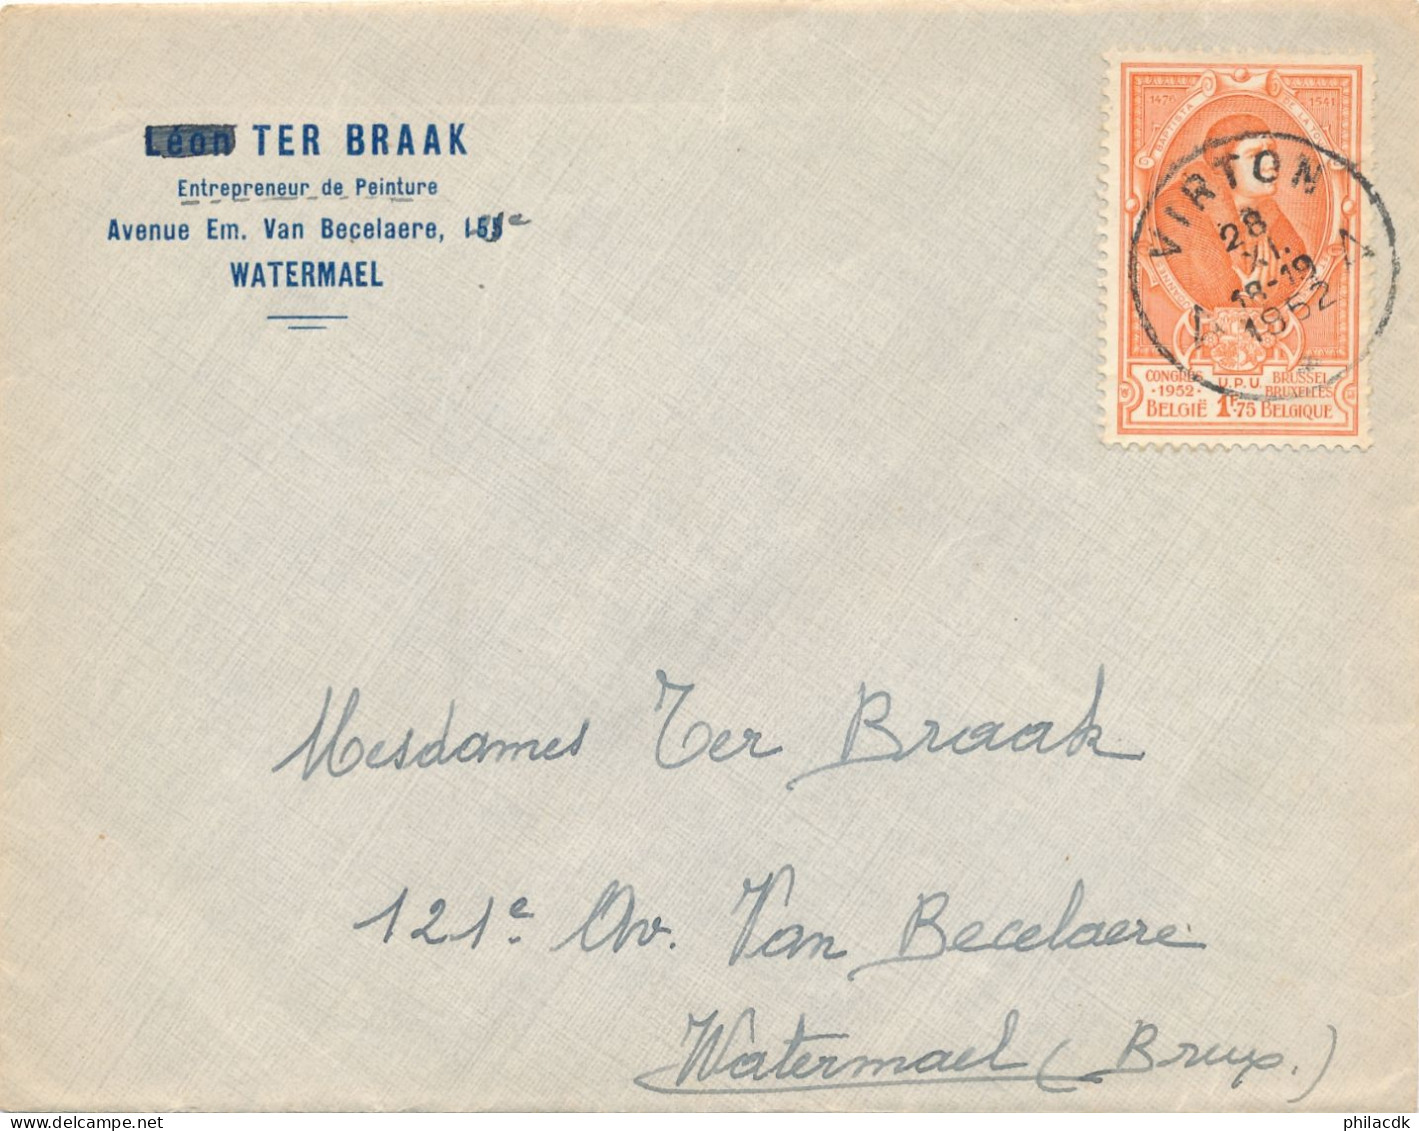 BELGIQUE - TIMBRE SUR ENVELOPPE OBLITEREE AVEC CAD VIRTON DU 28 NOVEMBRE 1952 - Covers & Documents